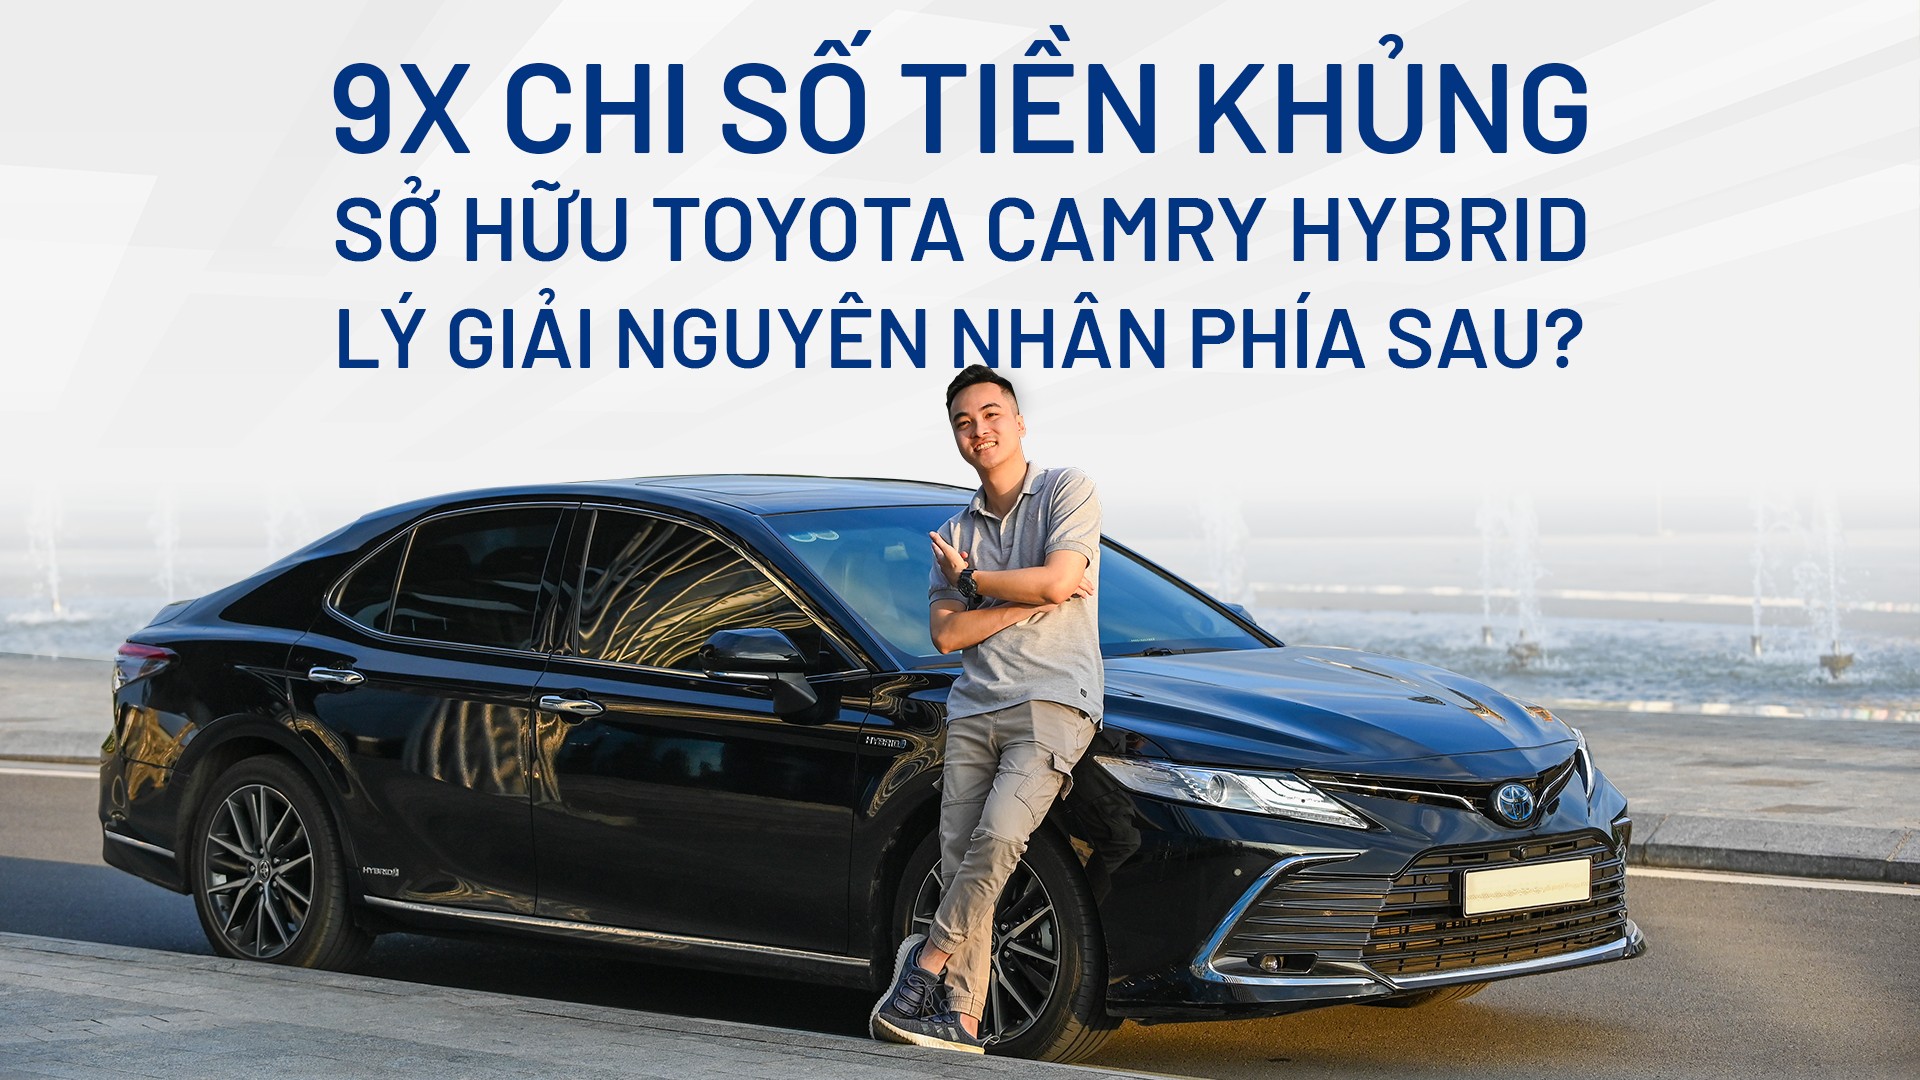 9X chi số tiền khủng sở hữu Toyota Camry Hybrid, lý giải nguyên nhân phía sau?